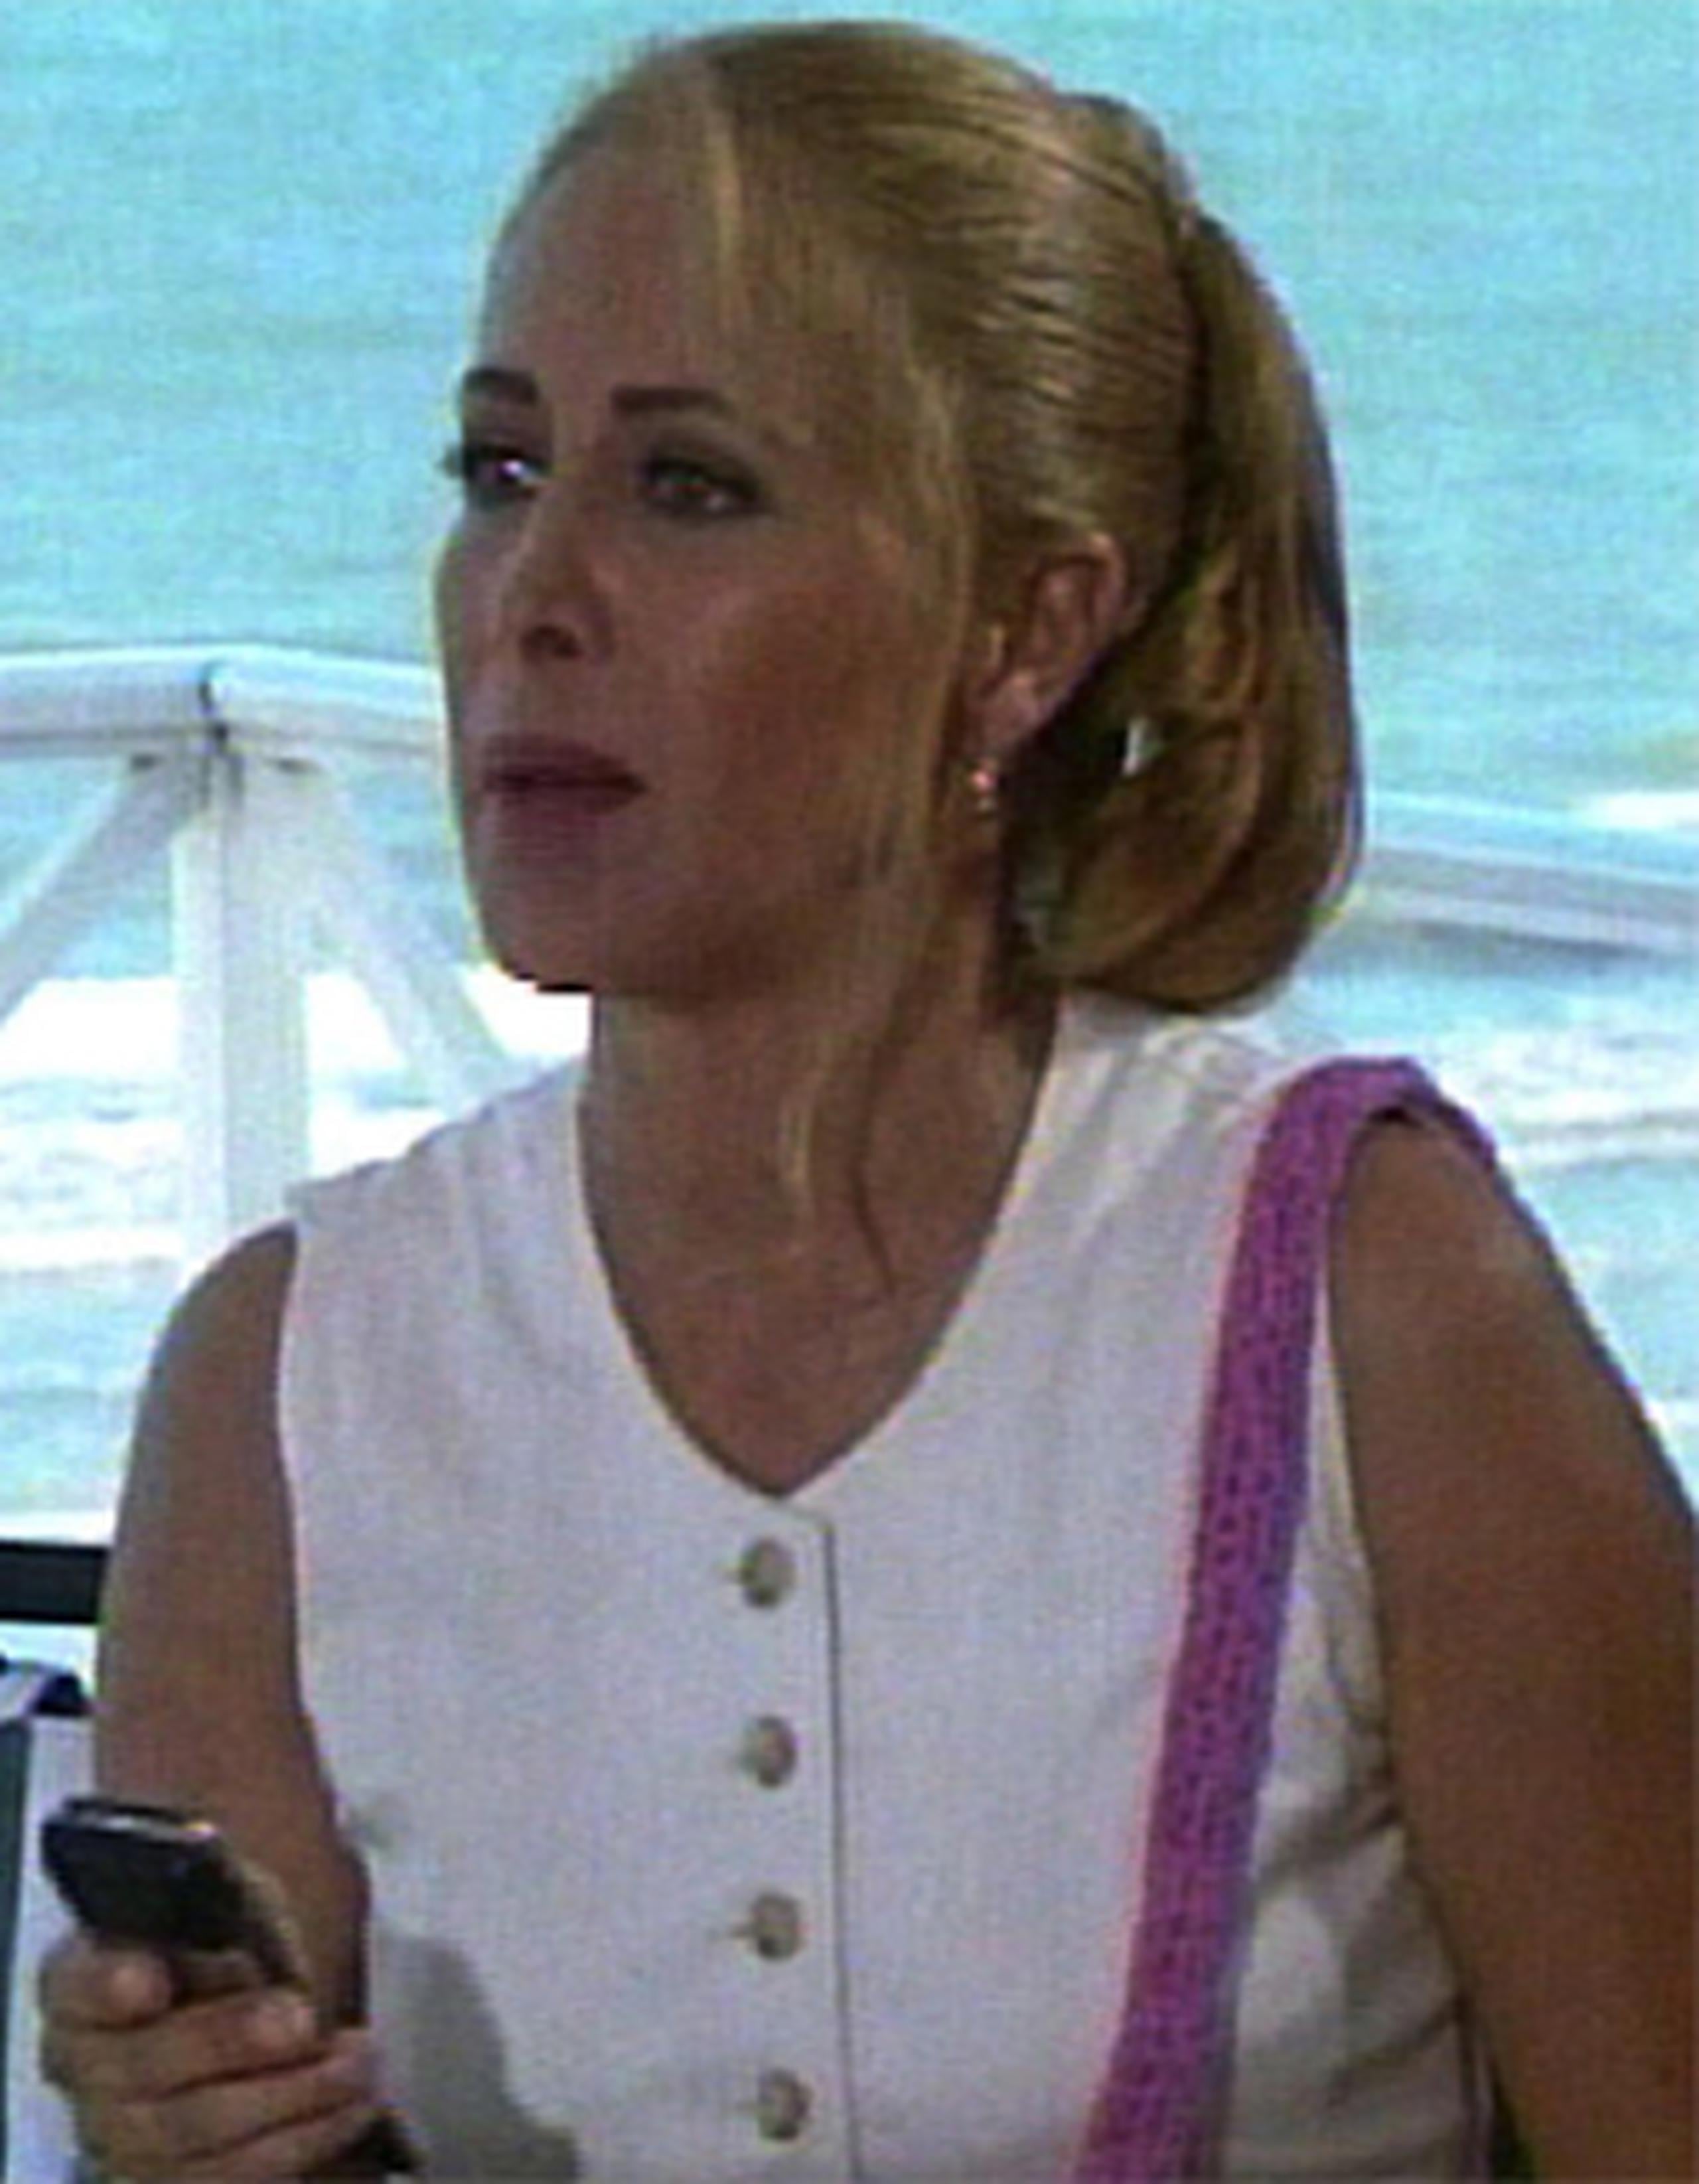 Luzardo destacó en los años 80 y 90 en varias producciones de la televisión colombiana y es recordada especialmente por su papel de Catalina ngel, una diseñadora de modas en "Yo soy Betty, la fea". (Archivo)